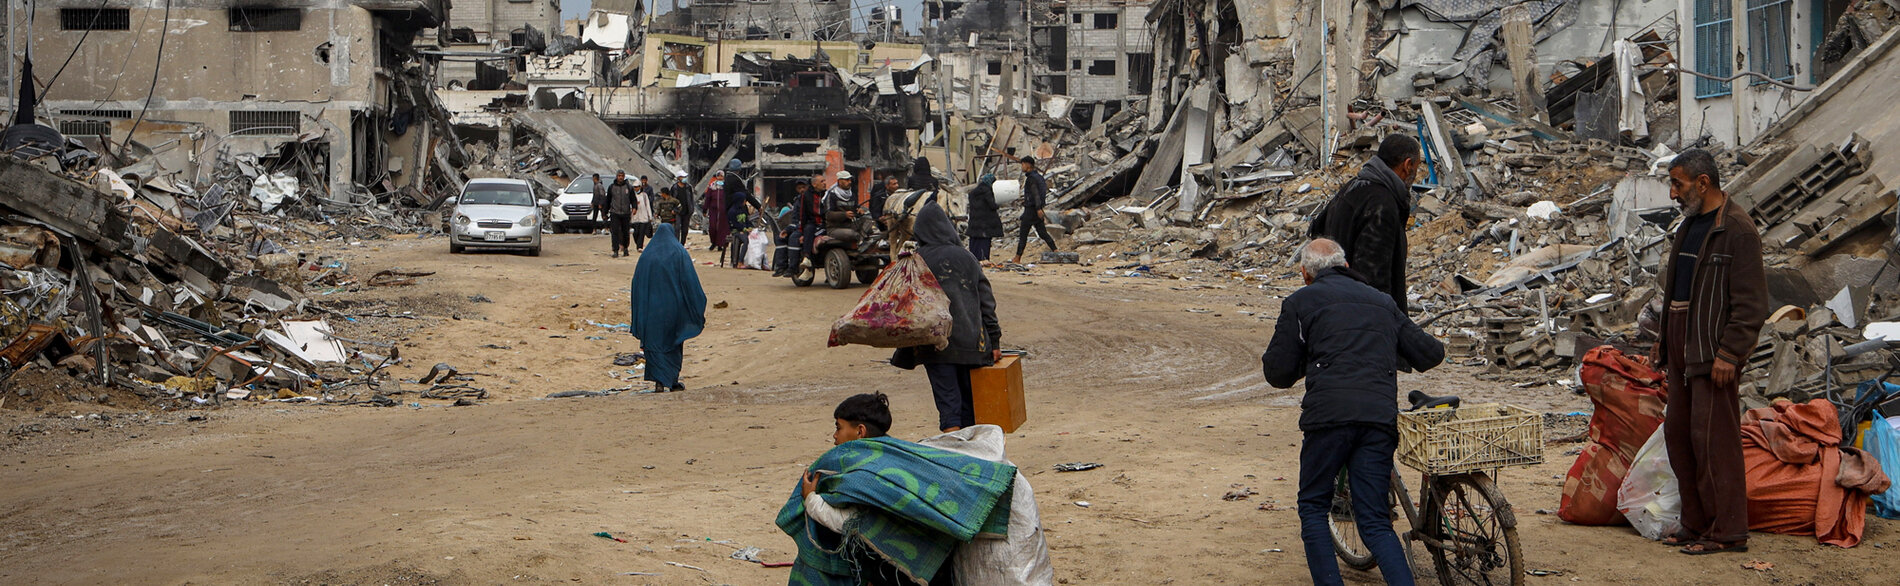 نازحون يحملون مقتنياتهم ويسيرون بين أنقاض المنازل المدمرة في خانيونس جنوب قطاع غزة وهم يبحثون عن ملجأ لهم. تصوير اليونيسف/البابا